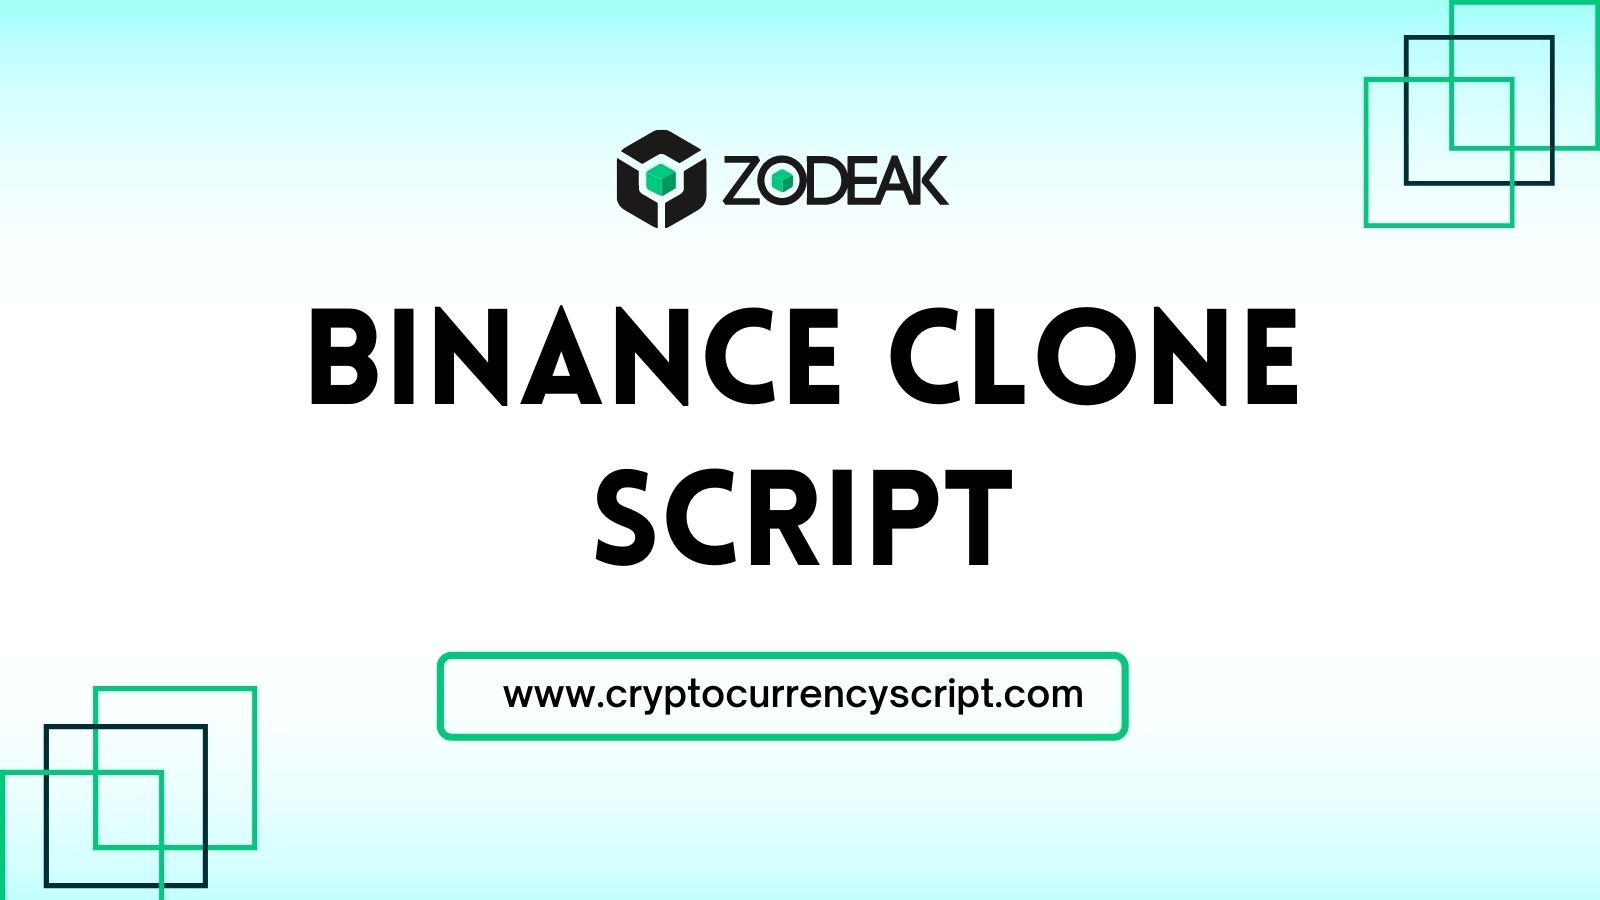 Binance Clone Script | Zodeak